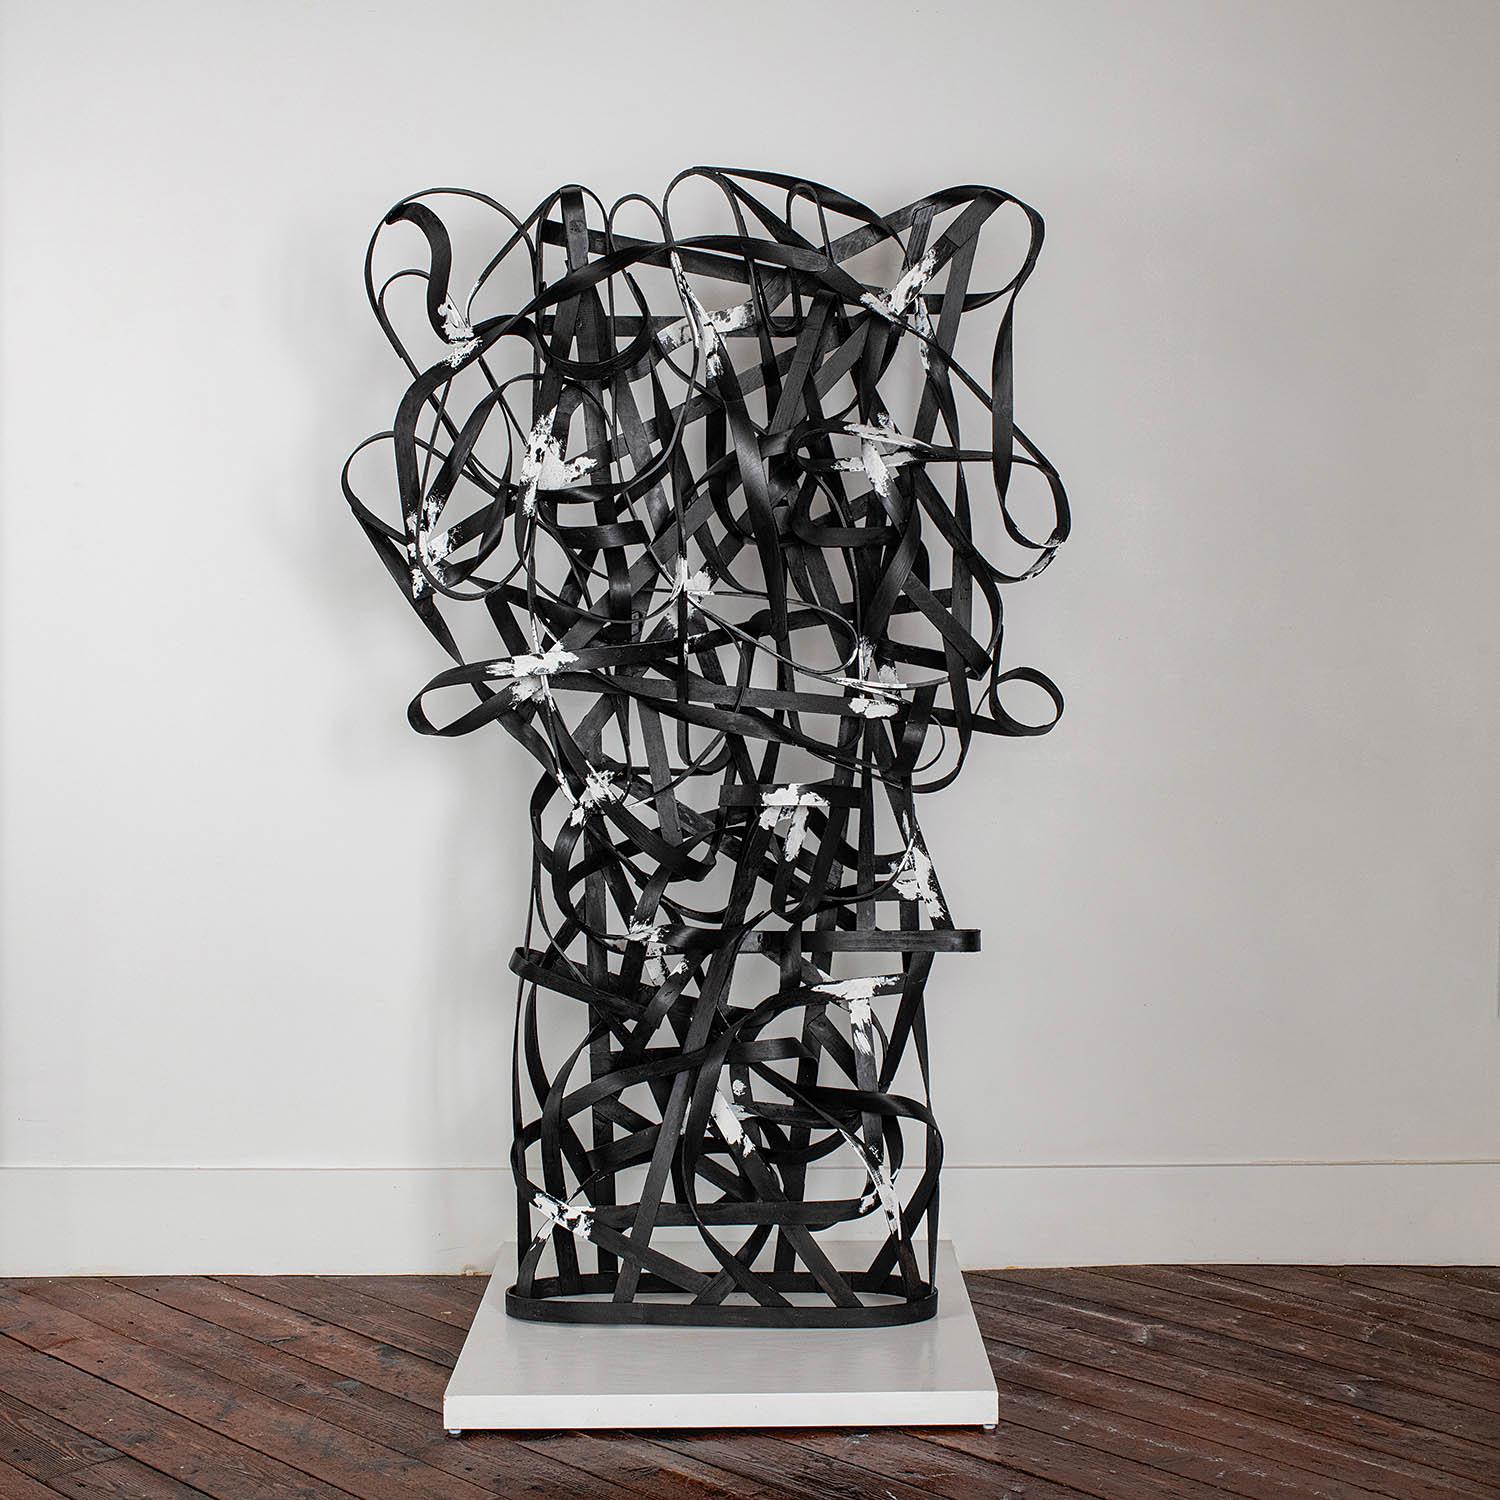 " Flight Lines " John McQueen, bandes de bois peintes, 76" x 46" x 9", 2019.

Cette sculpture abstraite en bois courbé a été créée par l'artiste américain John McQueen (né en 1943). McQueen explique que " [les] lignes noires font référence aux